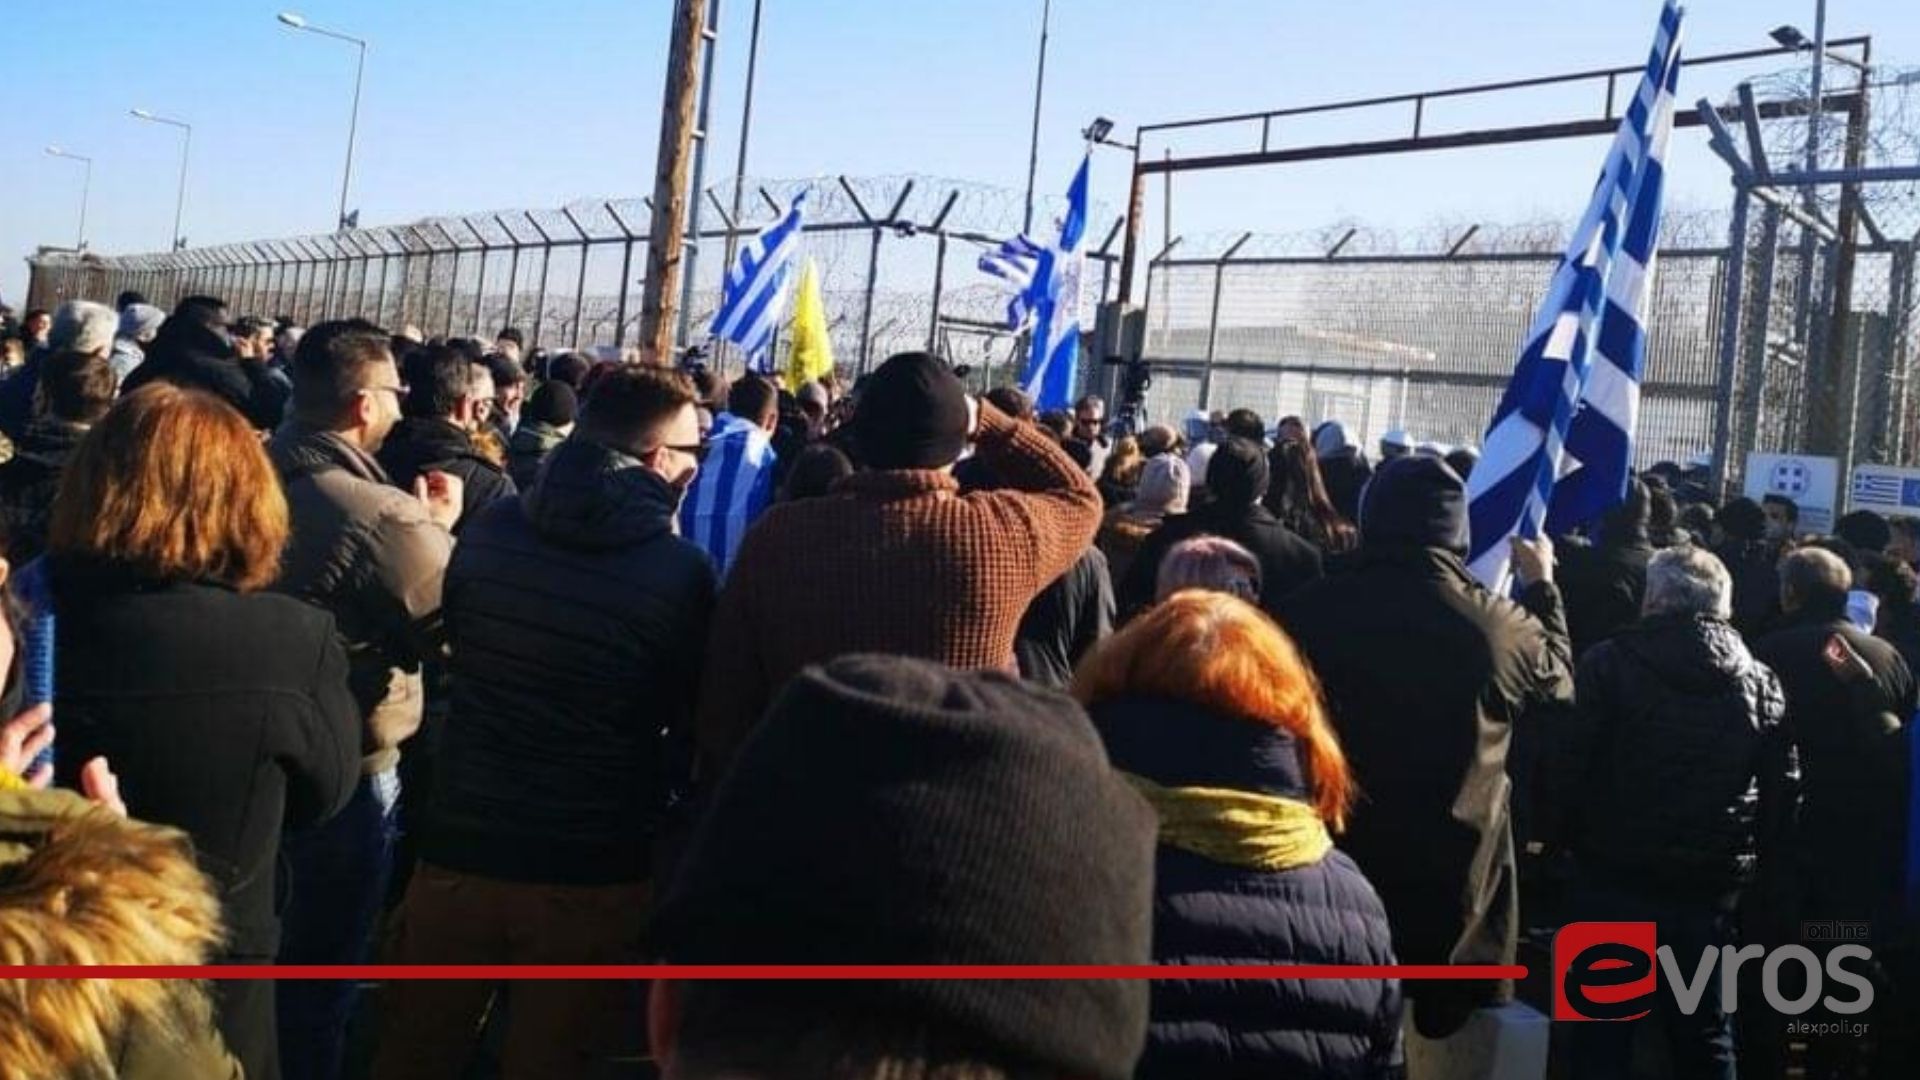 Πρόσκληση που διακινείται μέσω Διαδικτύου για νέα κινητοποίηση διαμαρτυρίας  αύριο (18/01), στο Φυλάκιο Ορεστιάδας - EvrosOnline.gr (Alexpoli.gr)